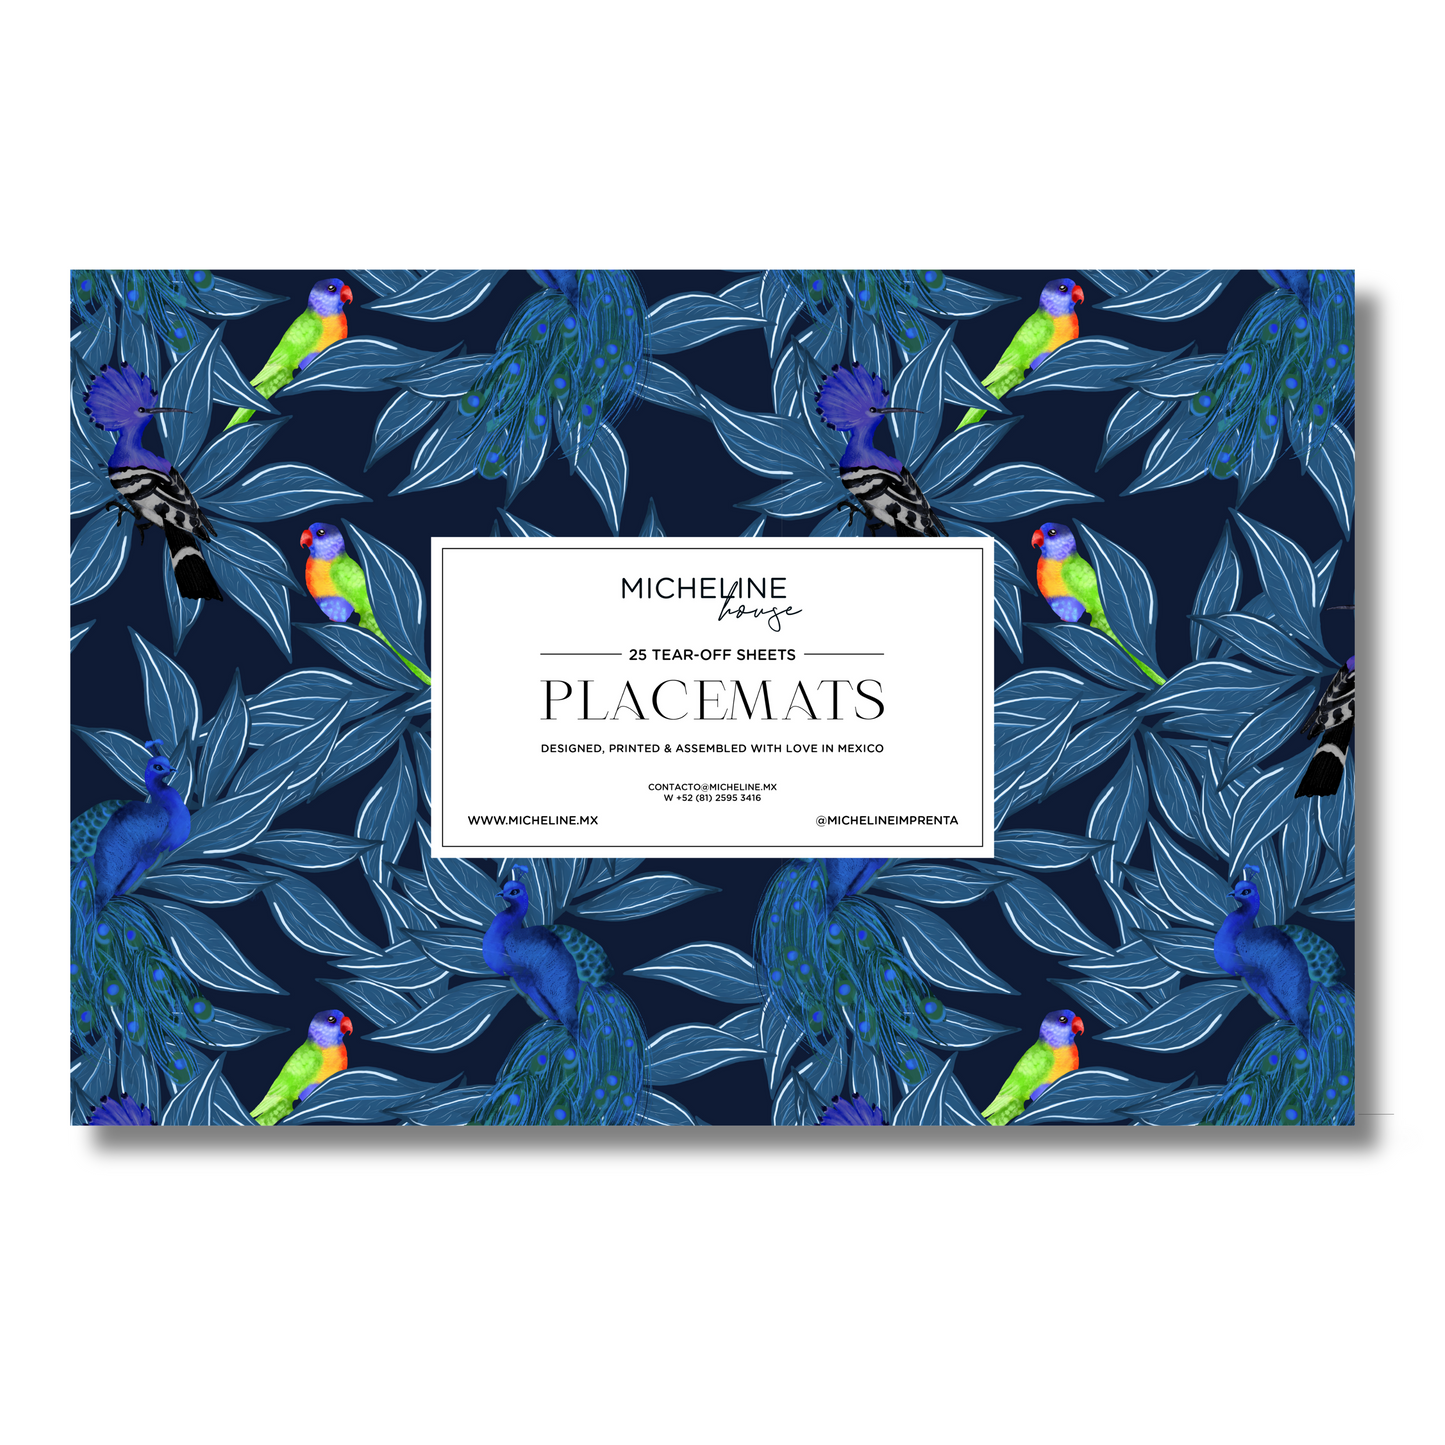 Individuales de papel con 25 individuales desprendibles. Diseño royal amazon en azul y pericos de colores brillantes